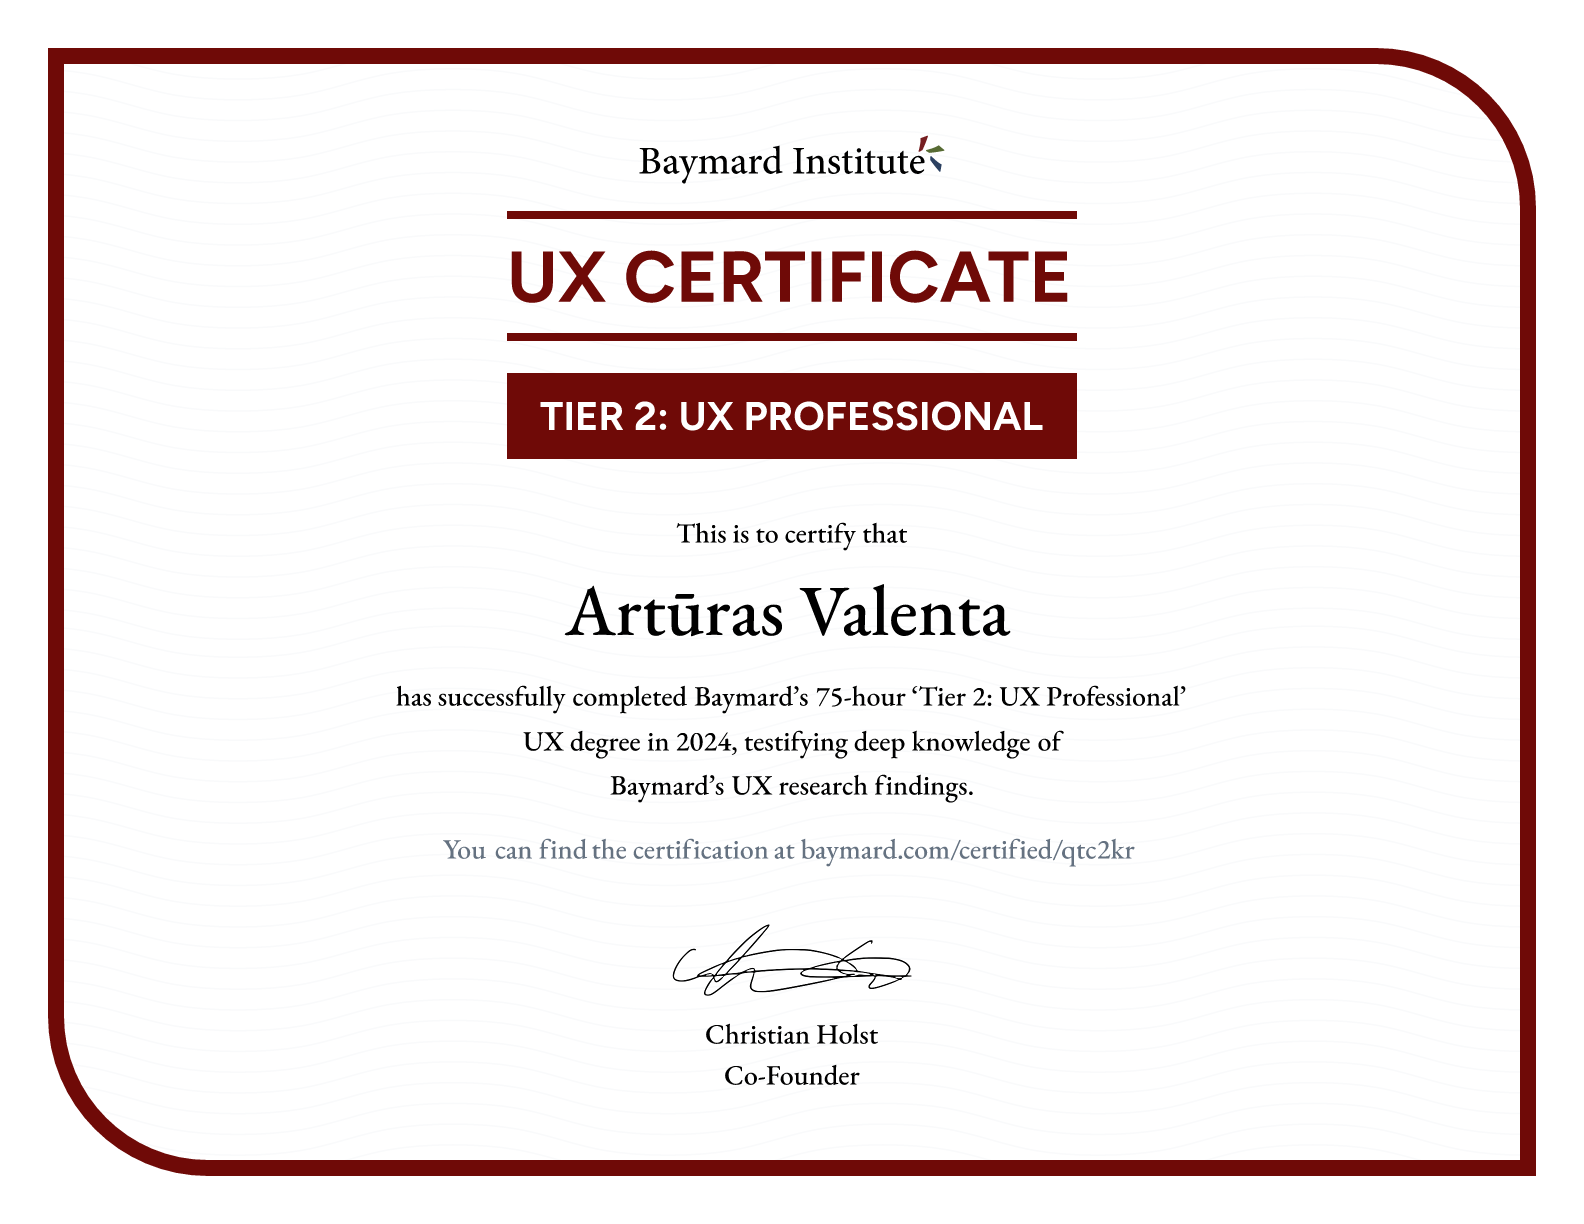 Artūras Valenta’s certificate